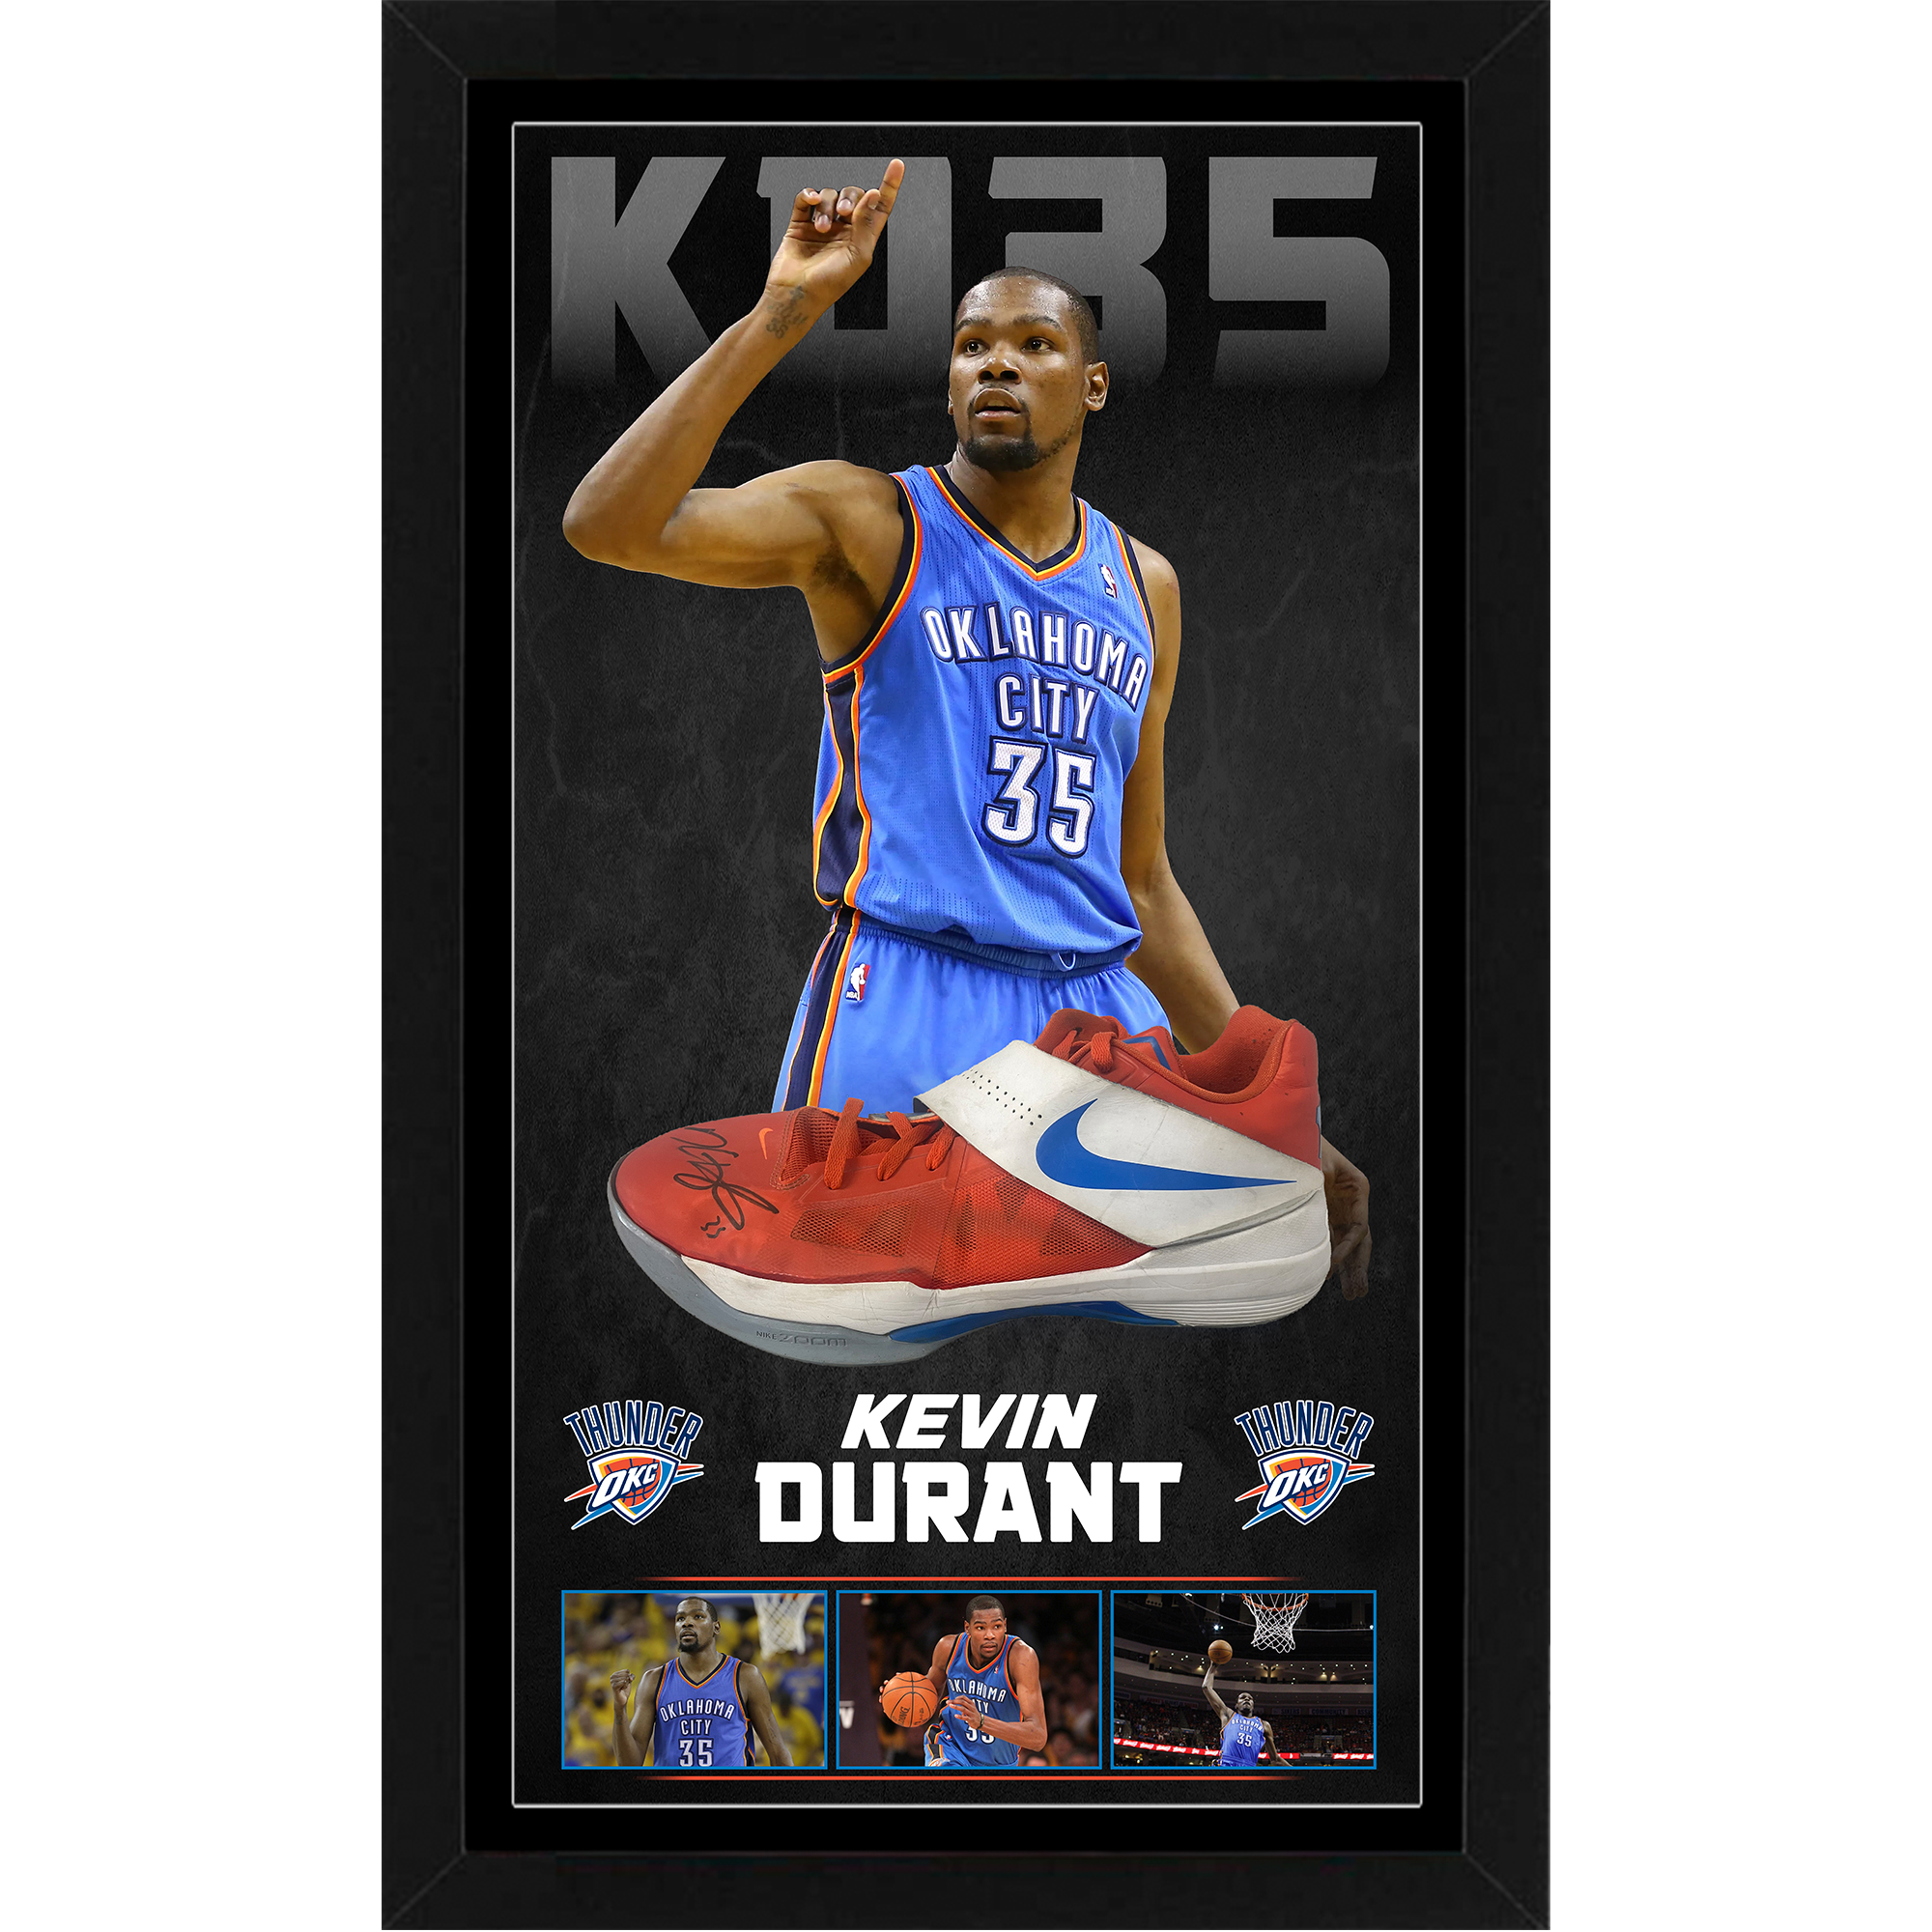 Basketball – KEVIN DURANT Signed & Framed Nike KD 4 Basketb...